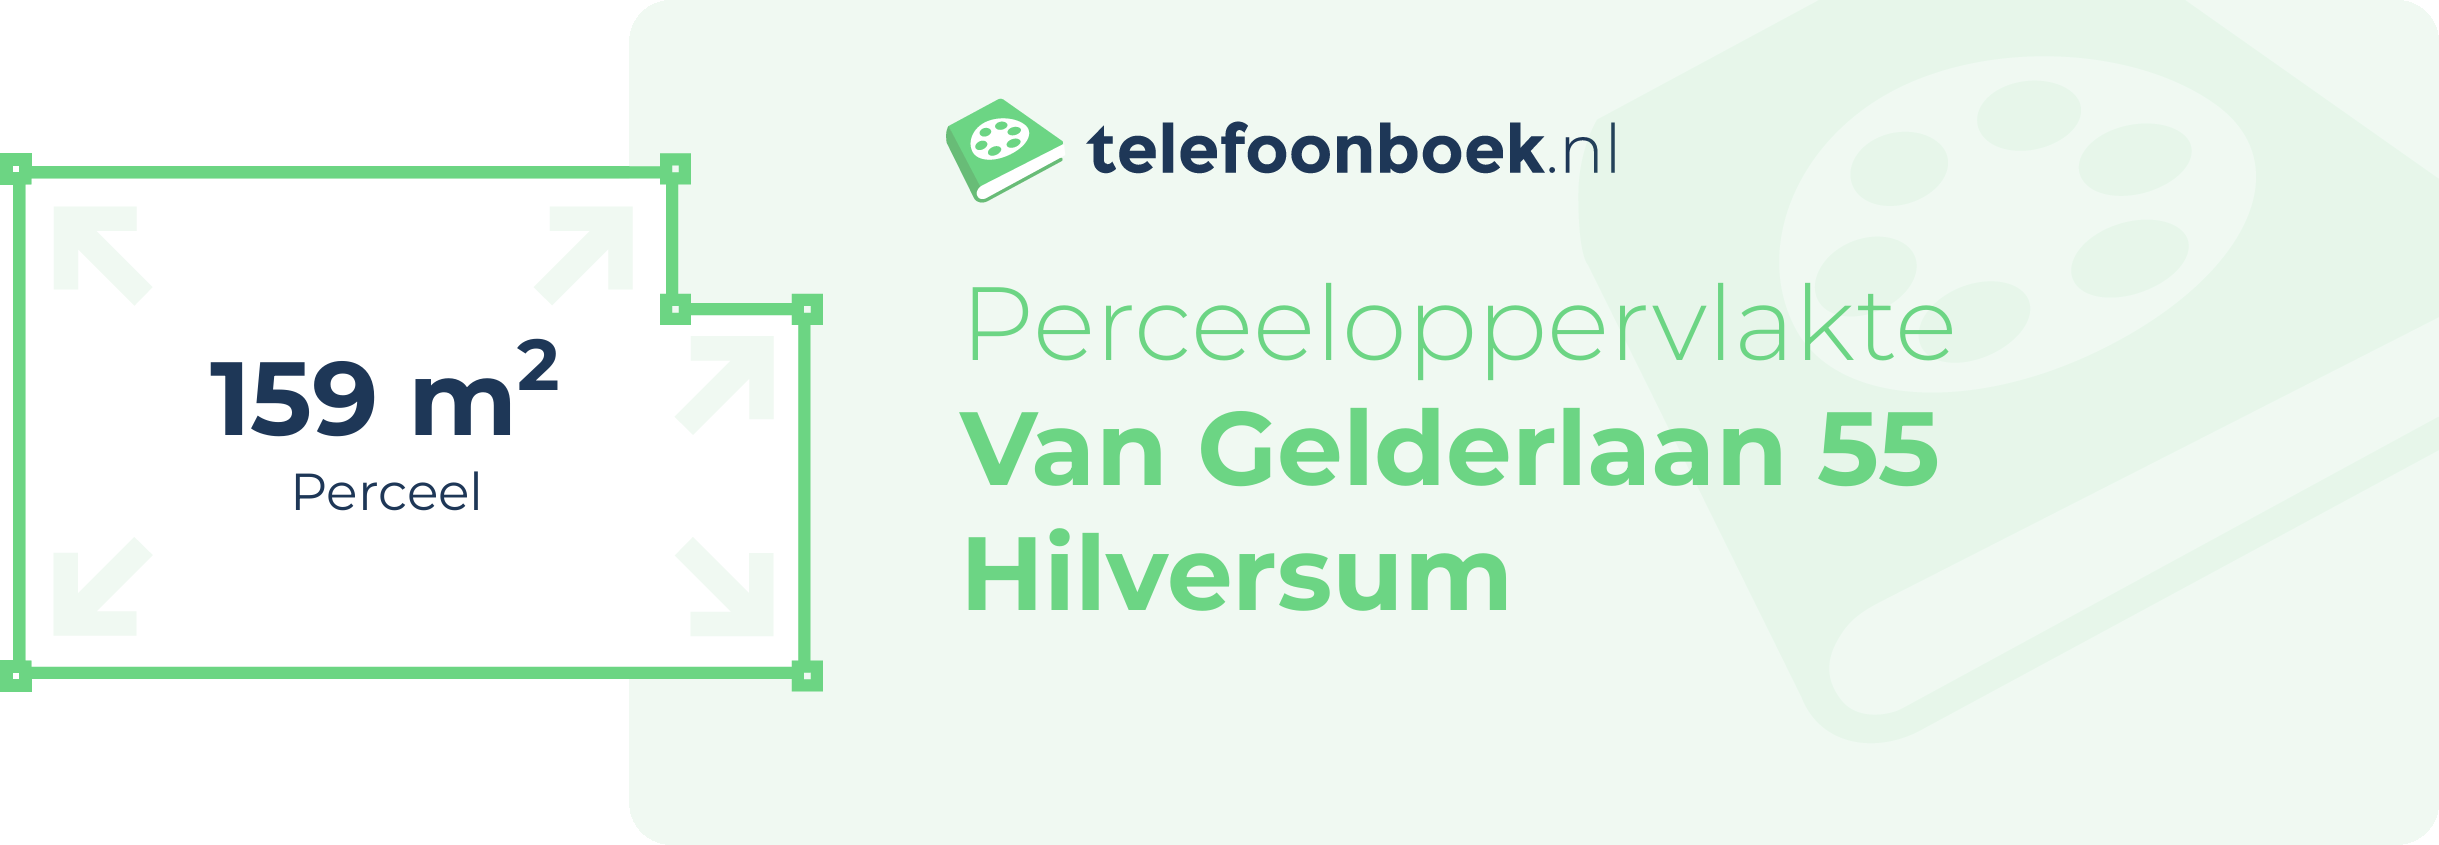 Perceeloppervlakte Van Gelderlaan 55 Hilversum